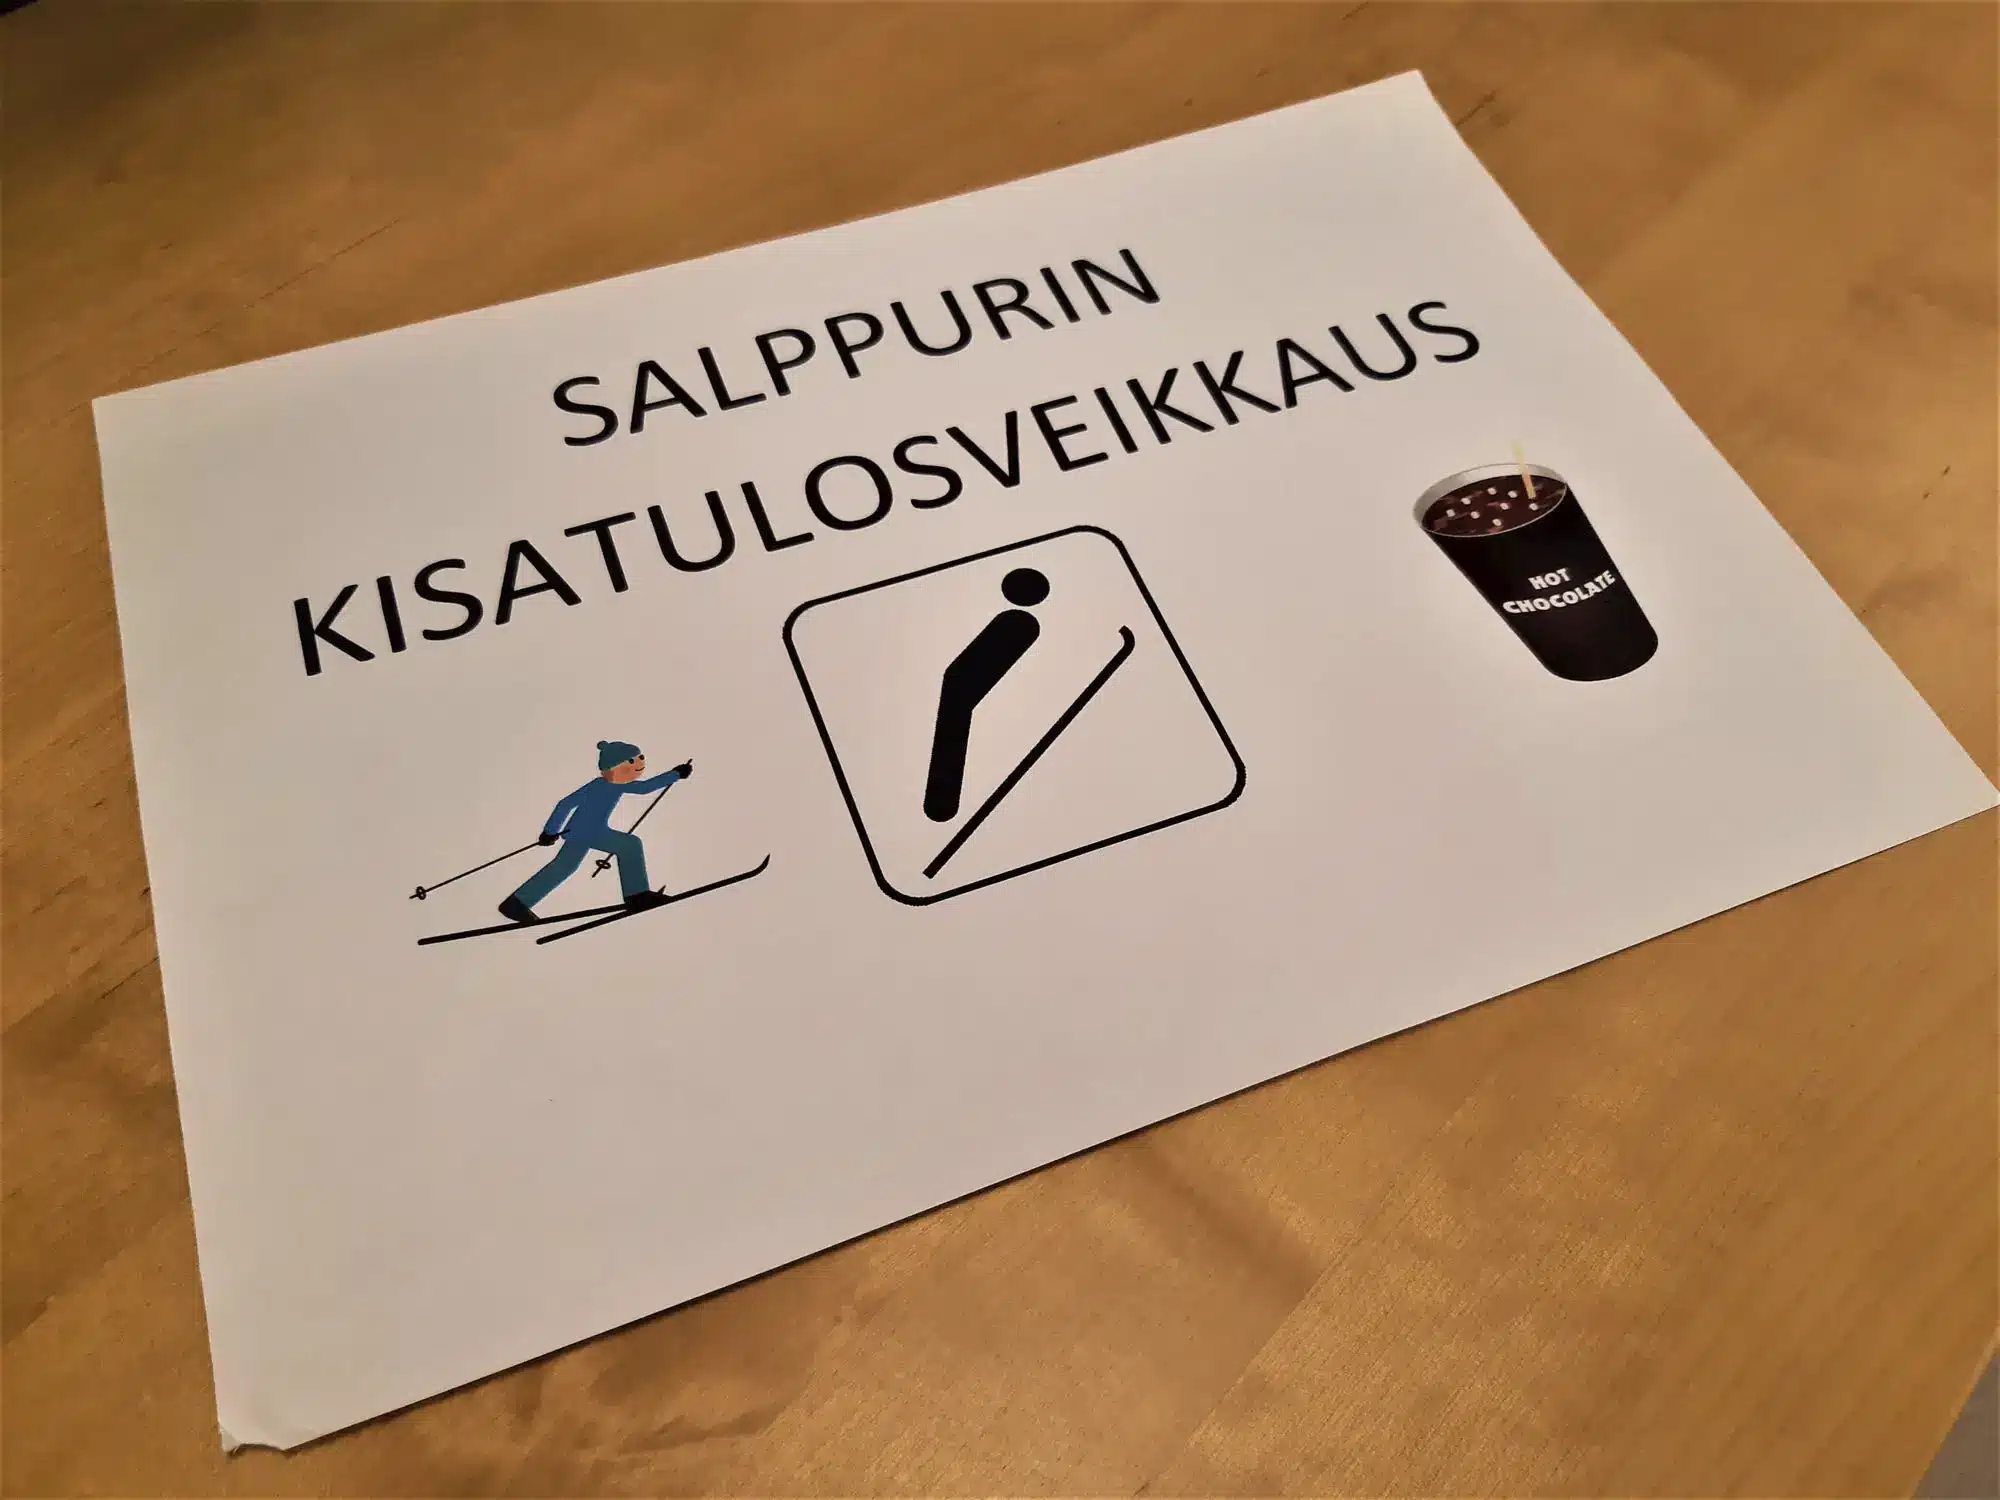 SagaSalpalinna Lahti Salppurin kisat